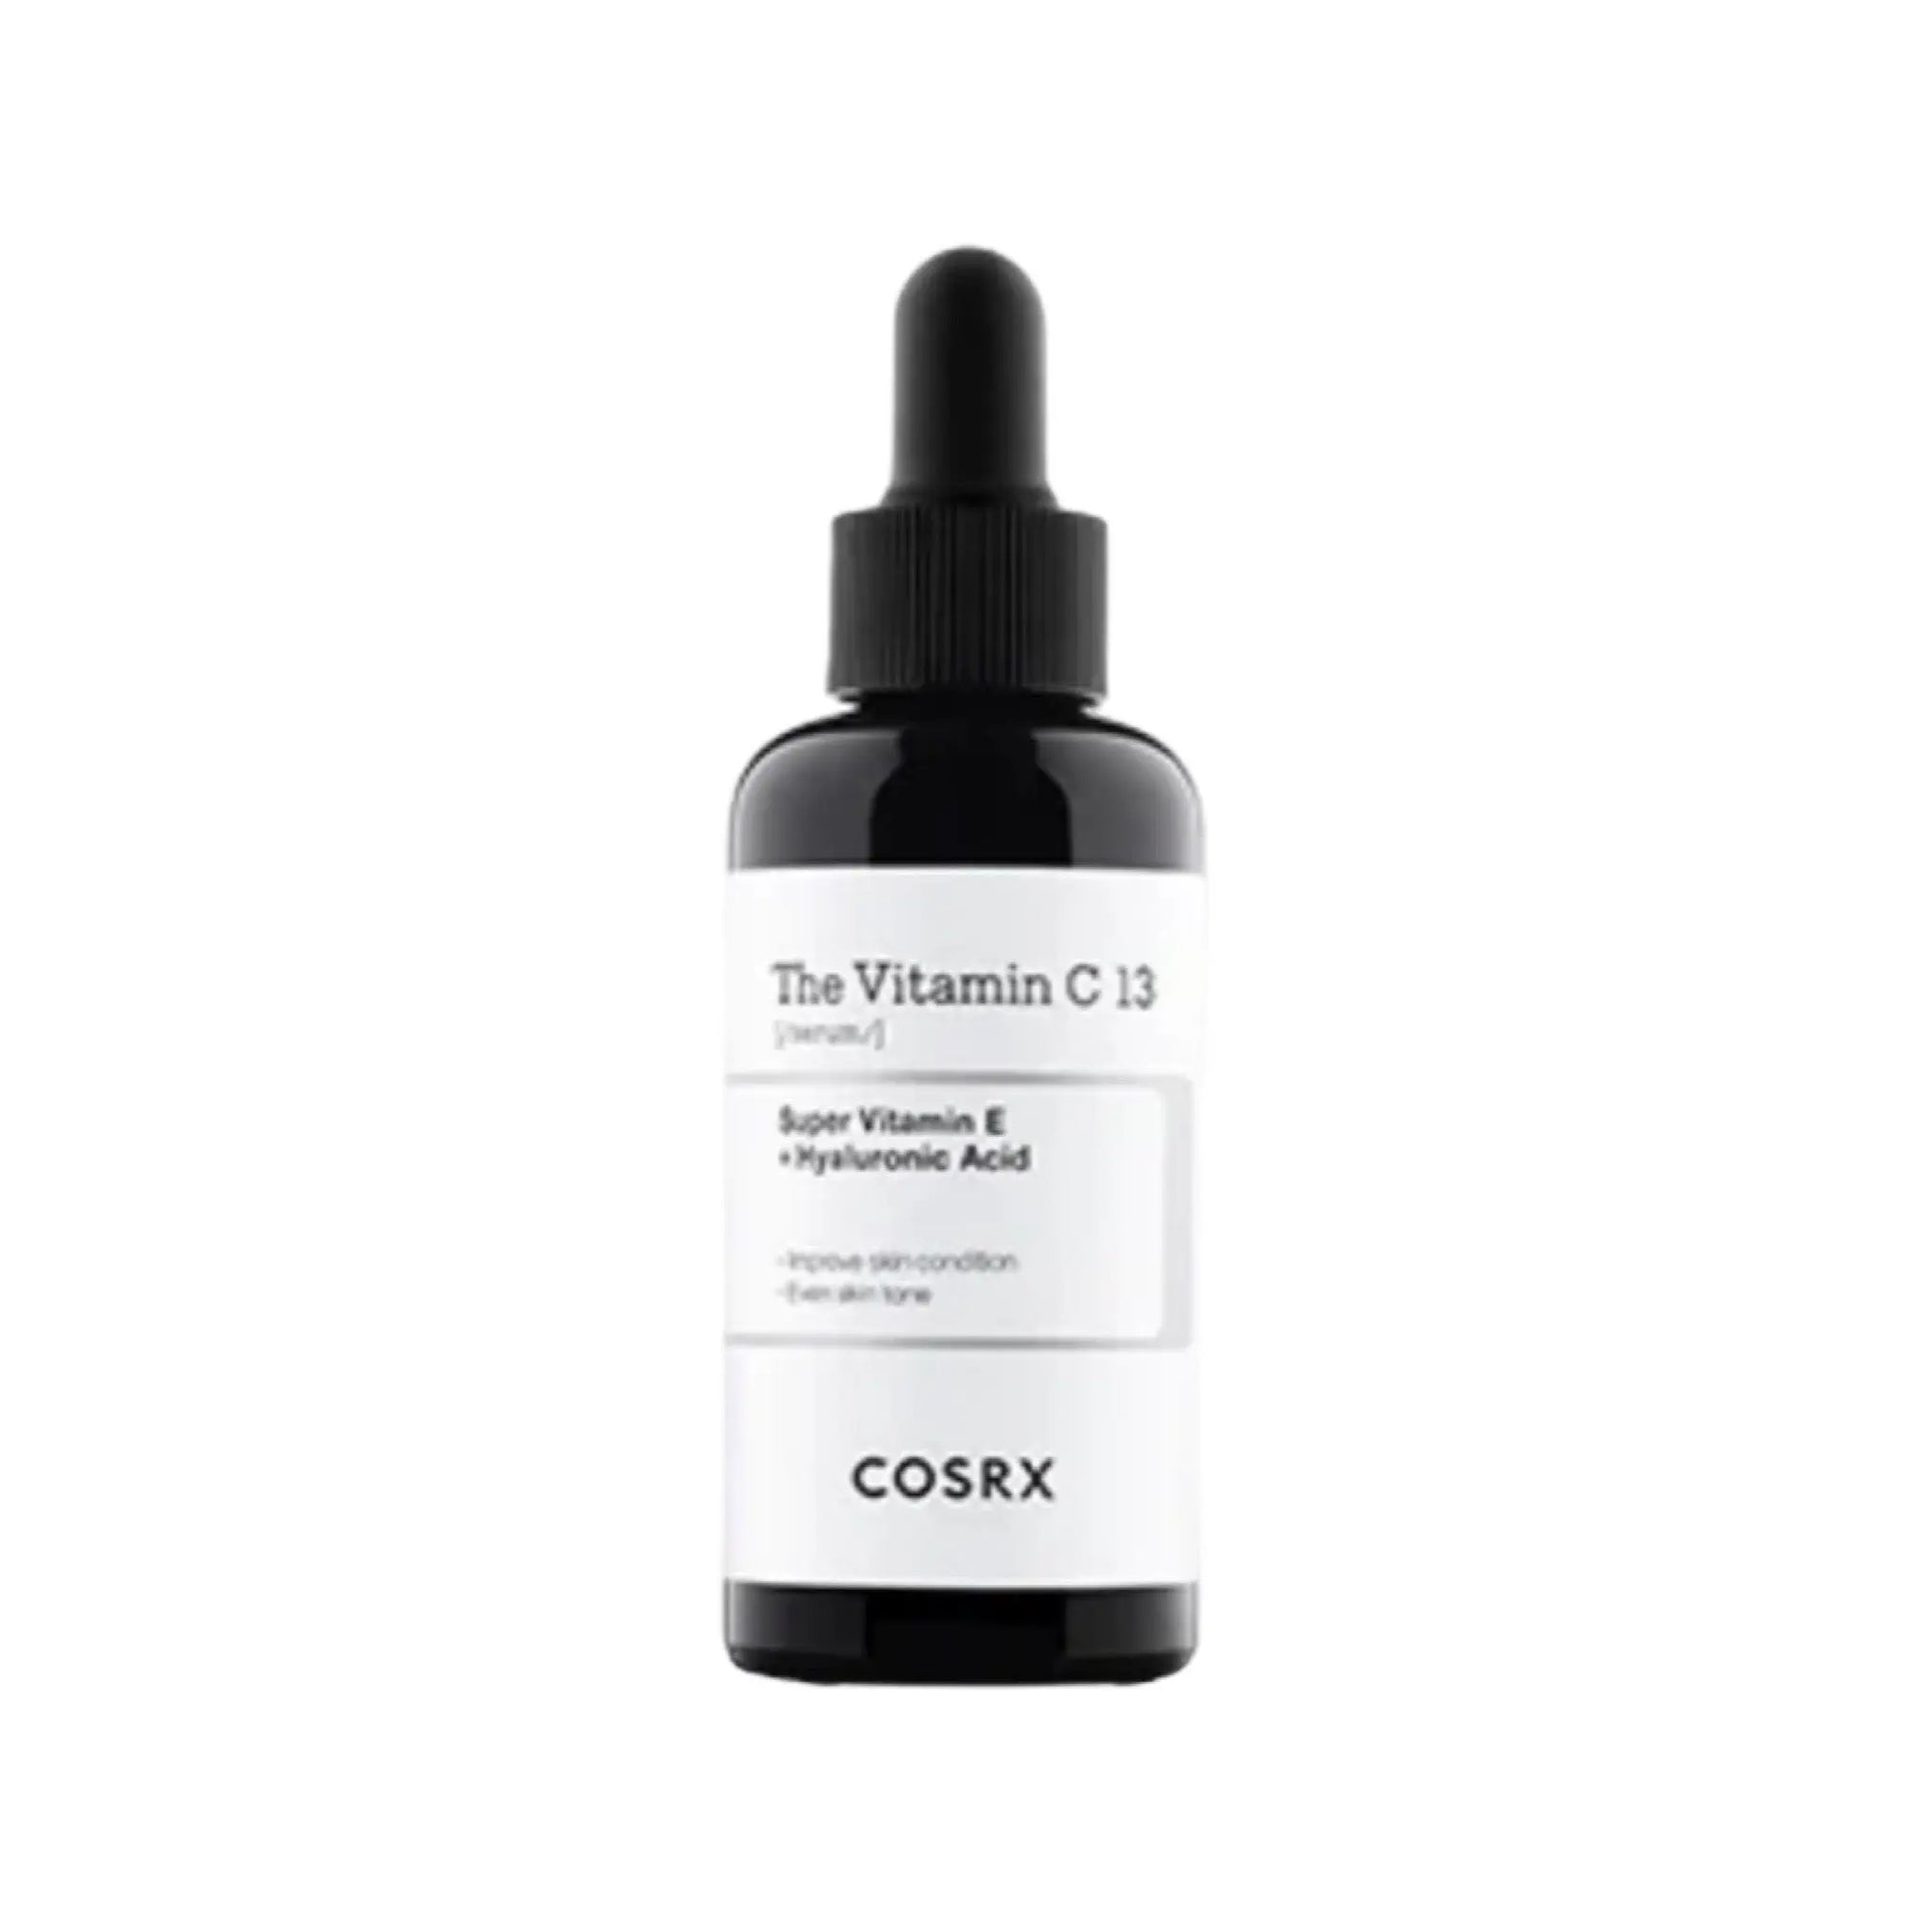 COSRX - The Vitamin C 13 Serum COSRX